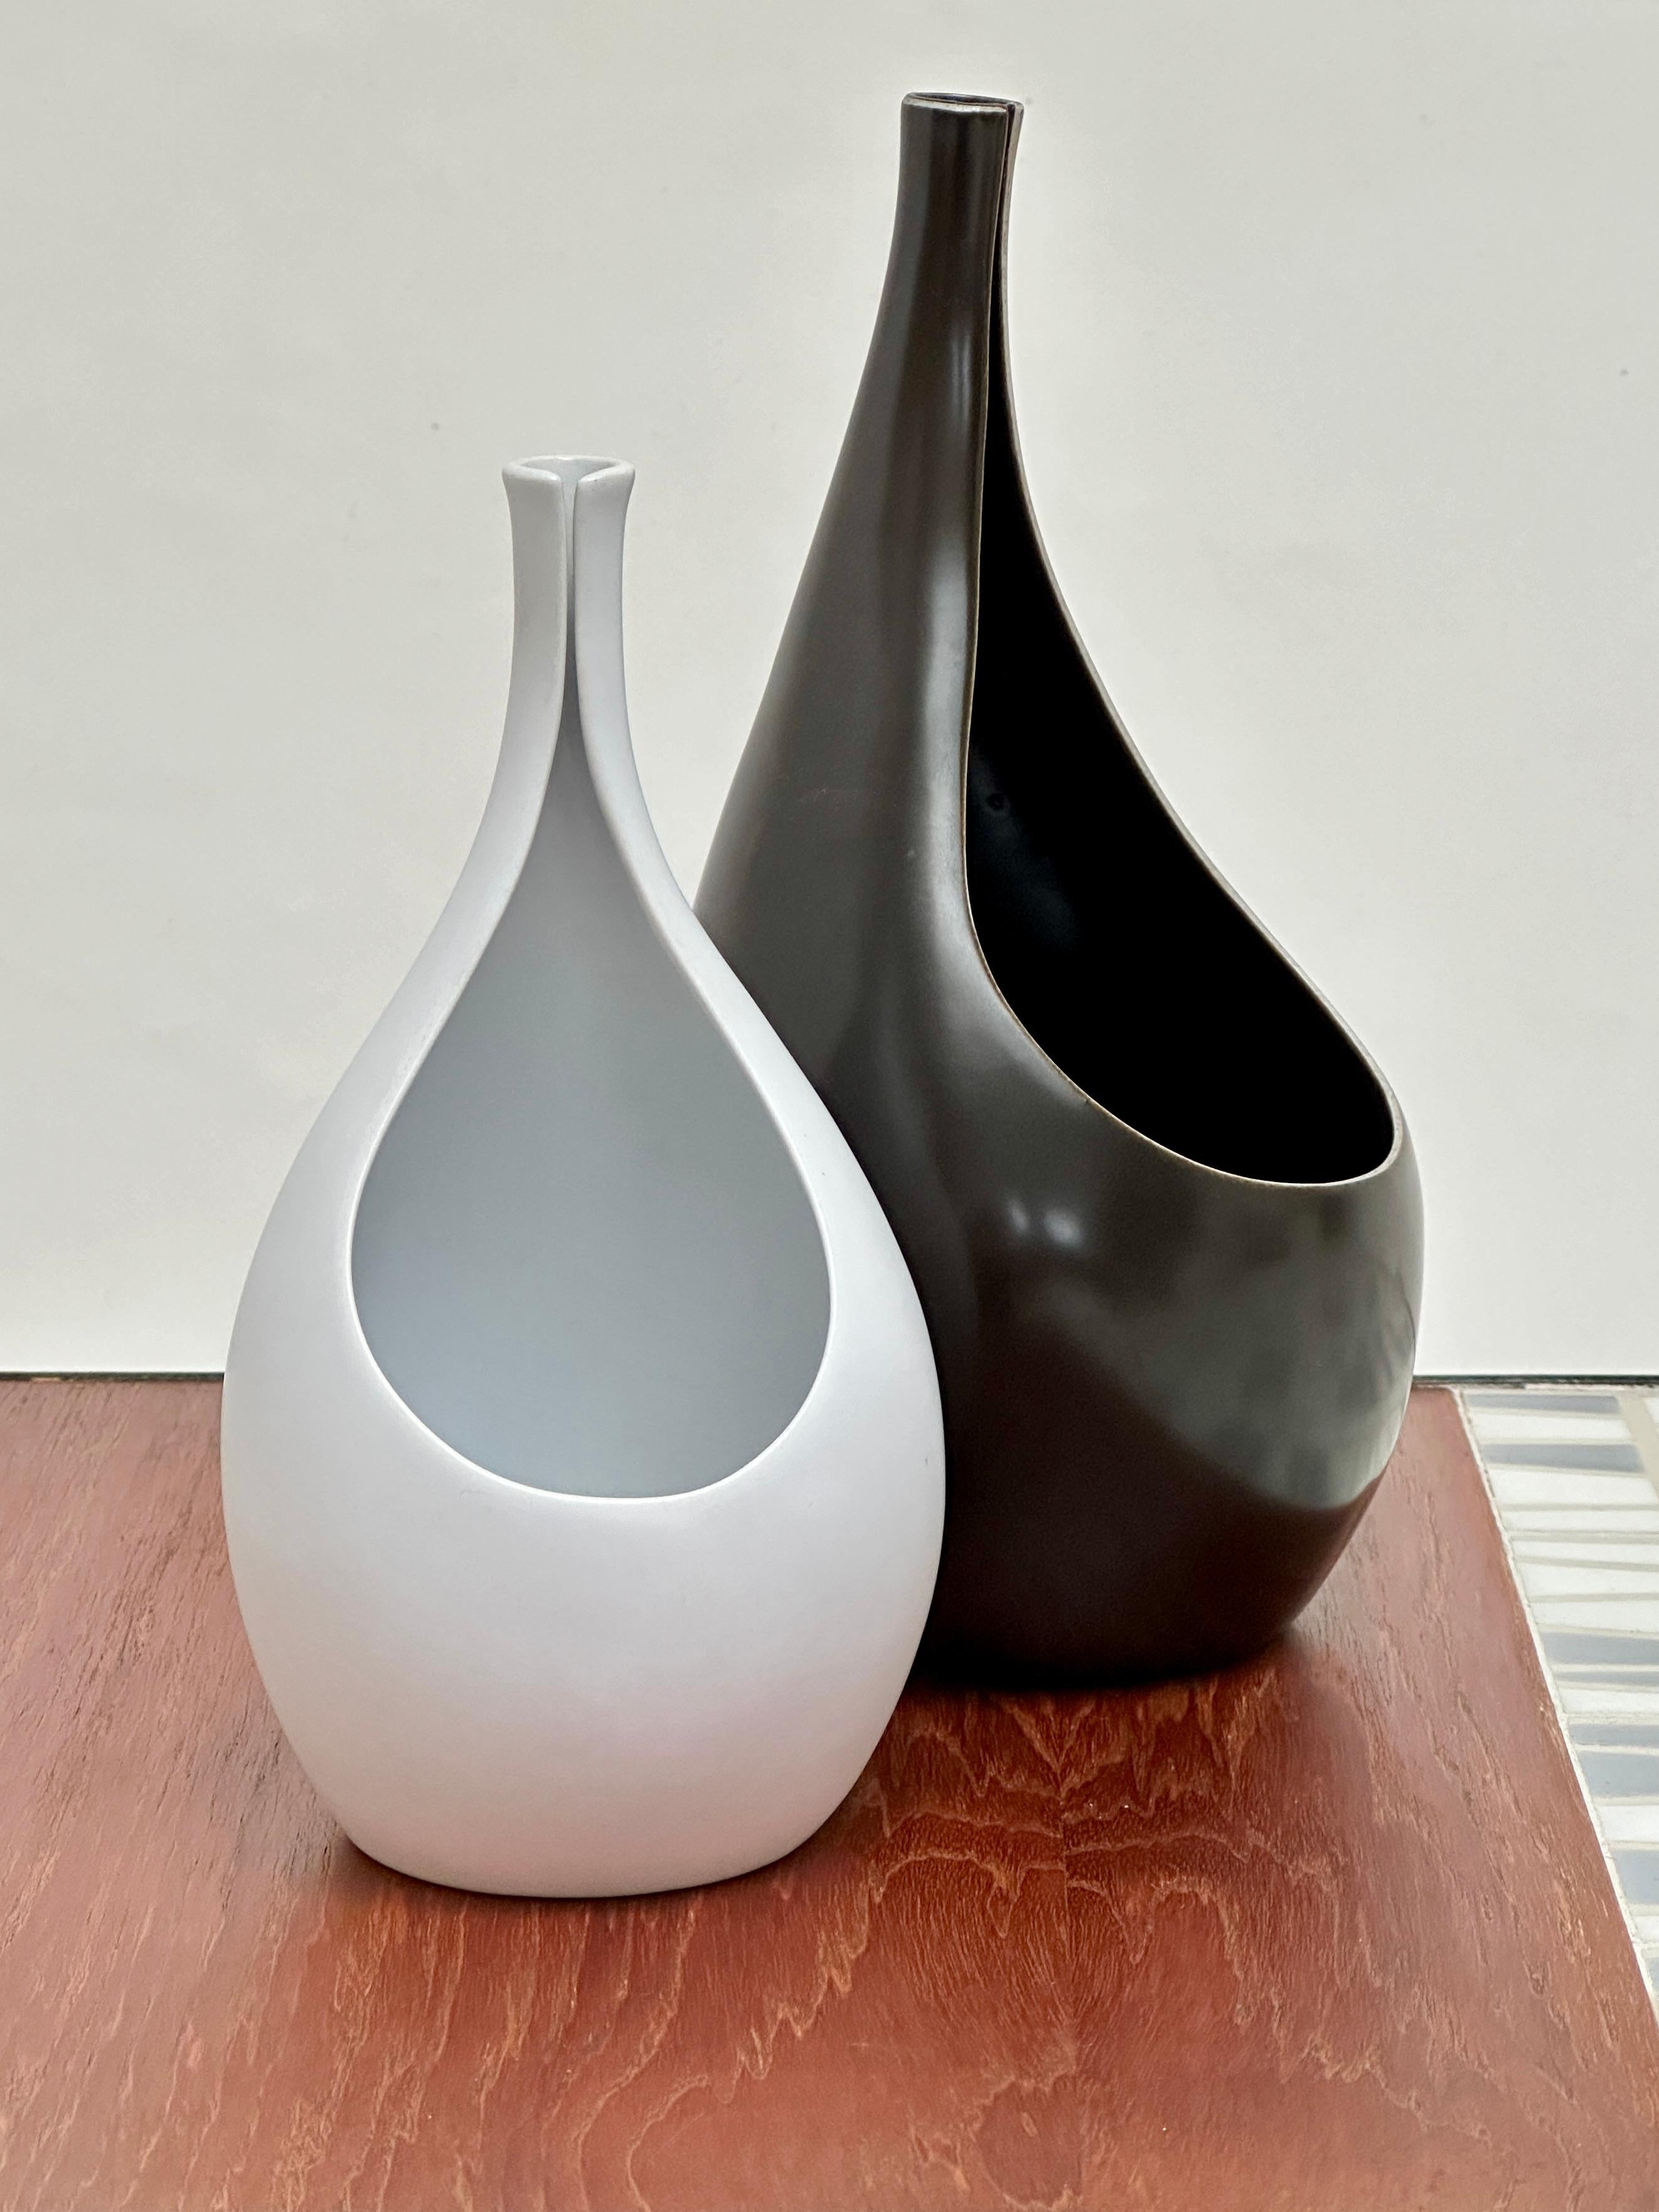 2 vases de la gamme Pungo créée par Stig Lindberg pour le fabricant suédois Gustavsberg en 1953.

Grès fin avec émail blanc mat pour l'un et noir satiné dit 